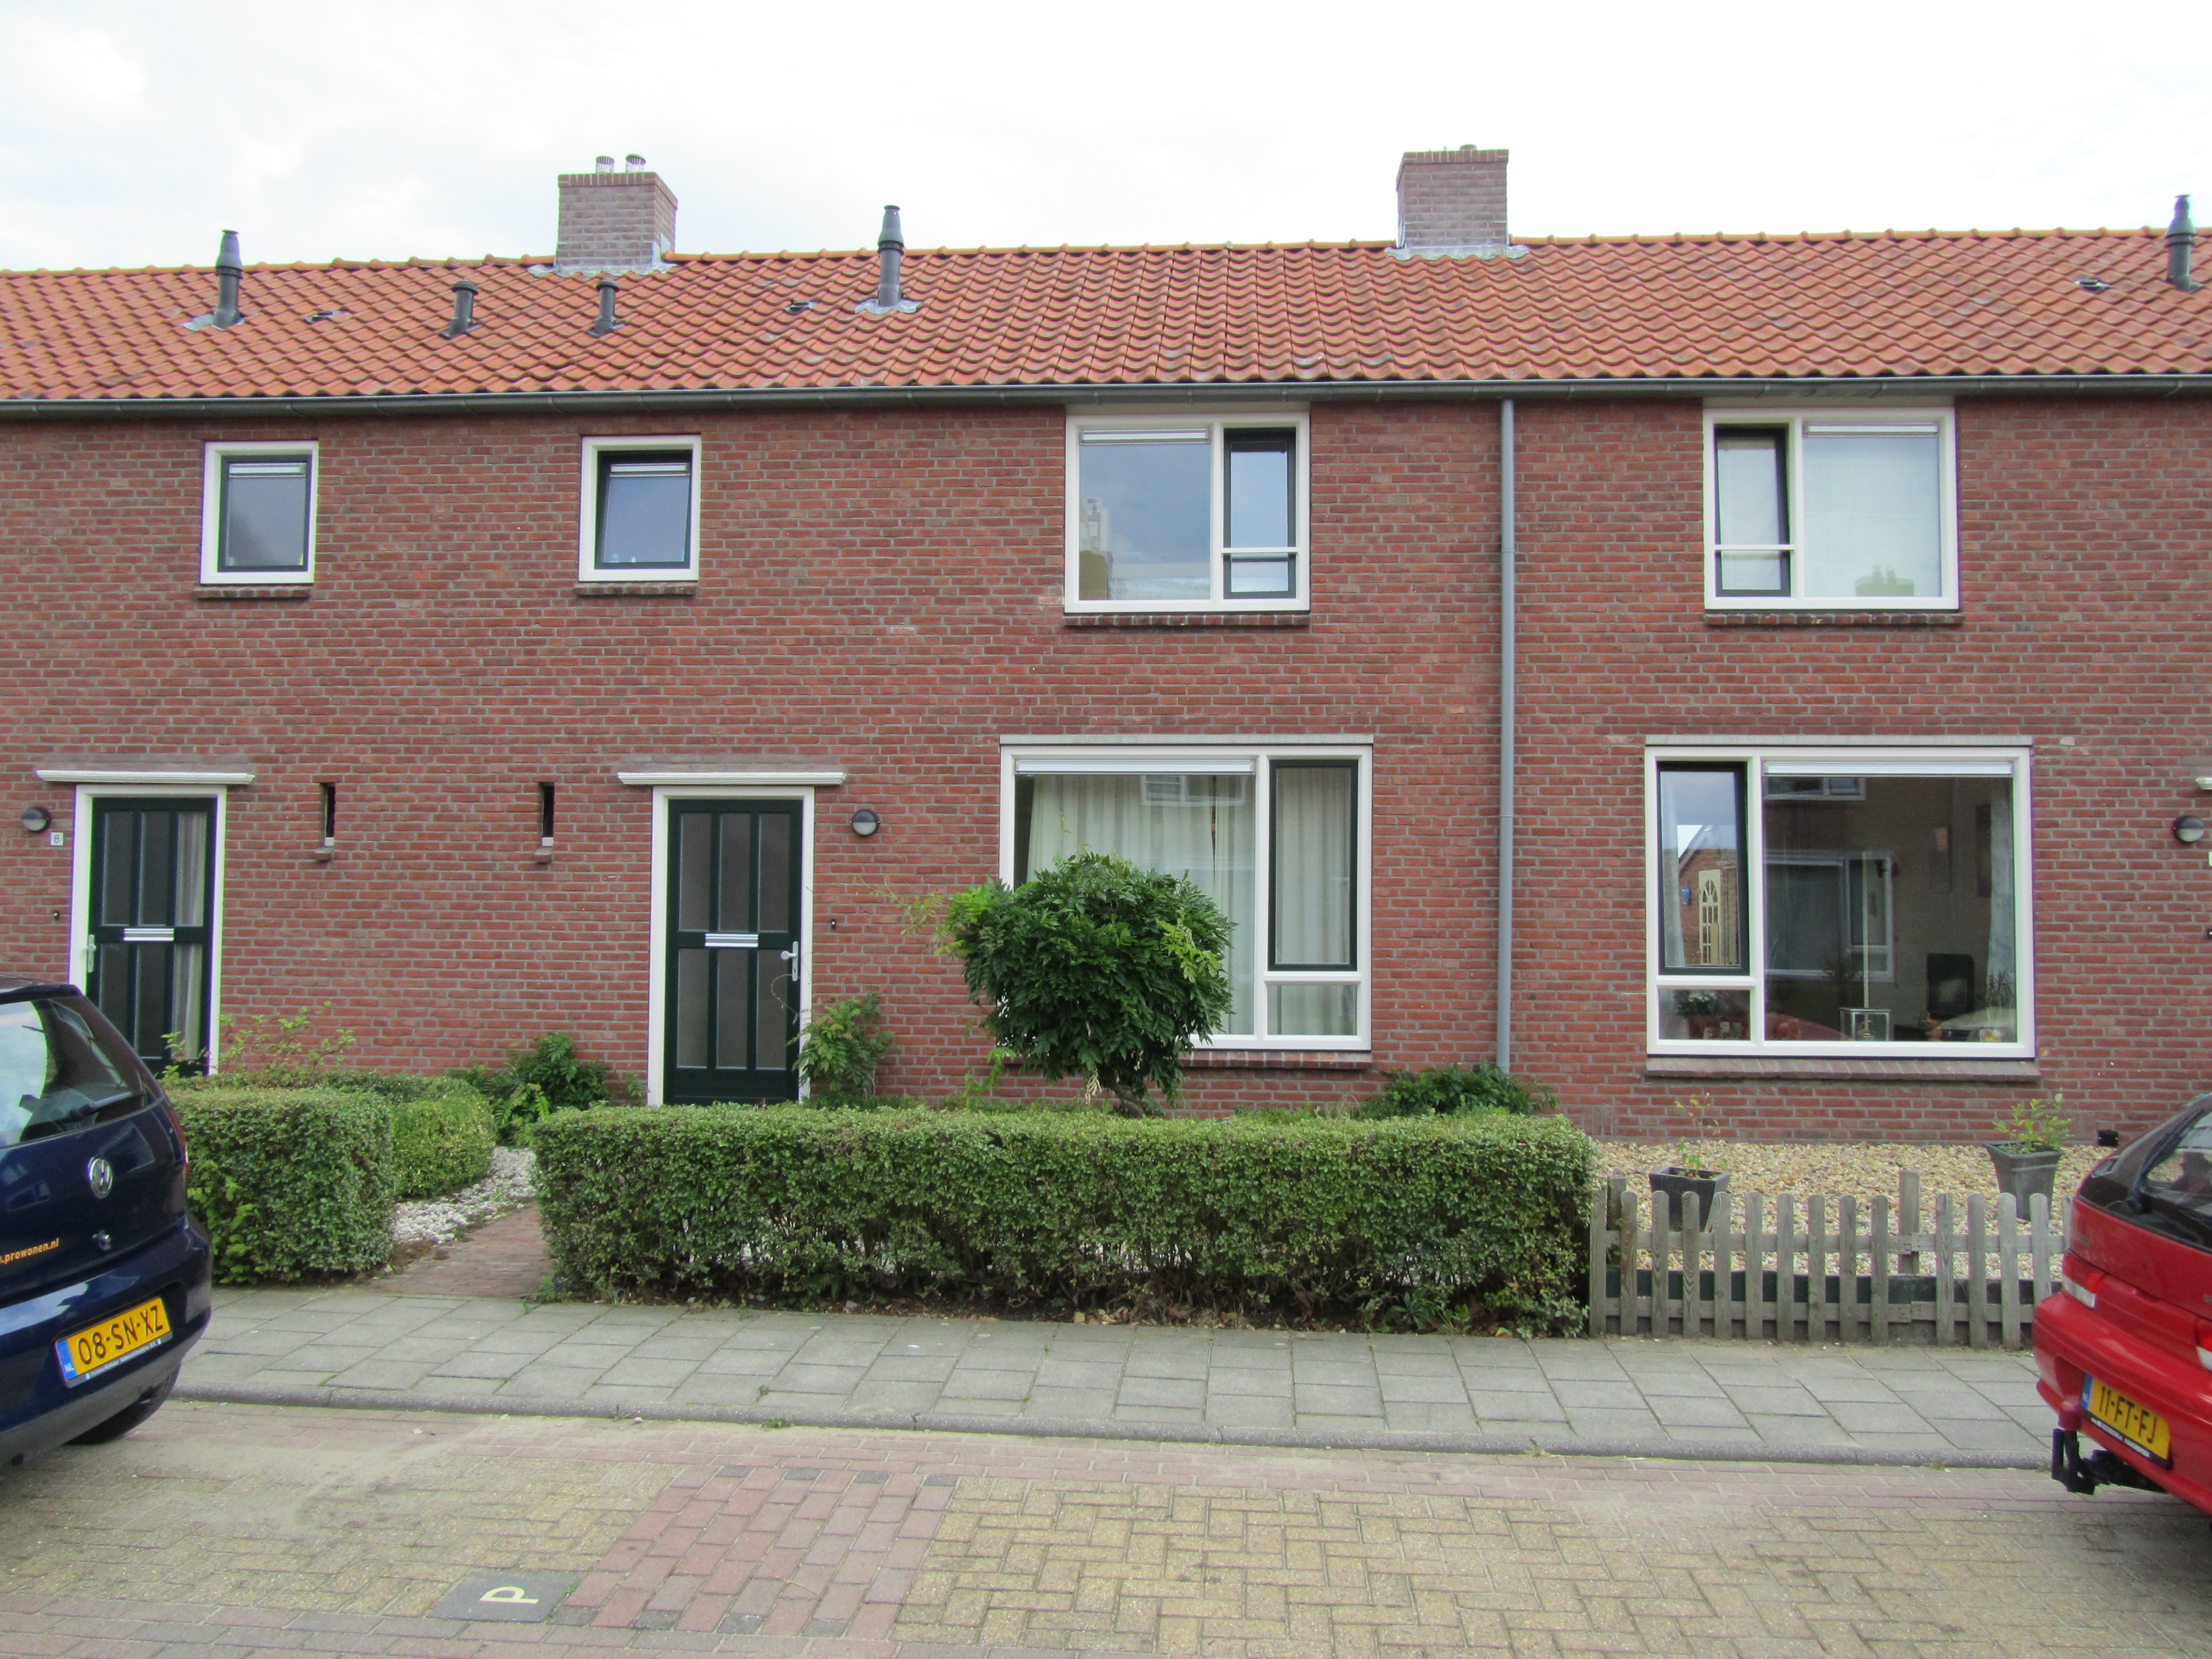 K.P. van der Veldestraat 6, 7161 ZR Neede, Nederland